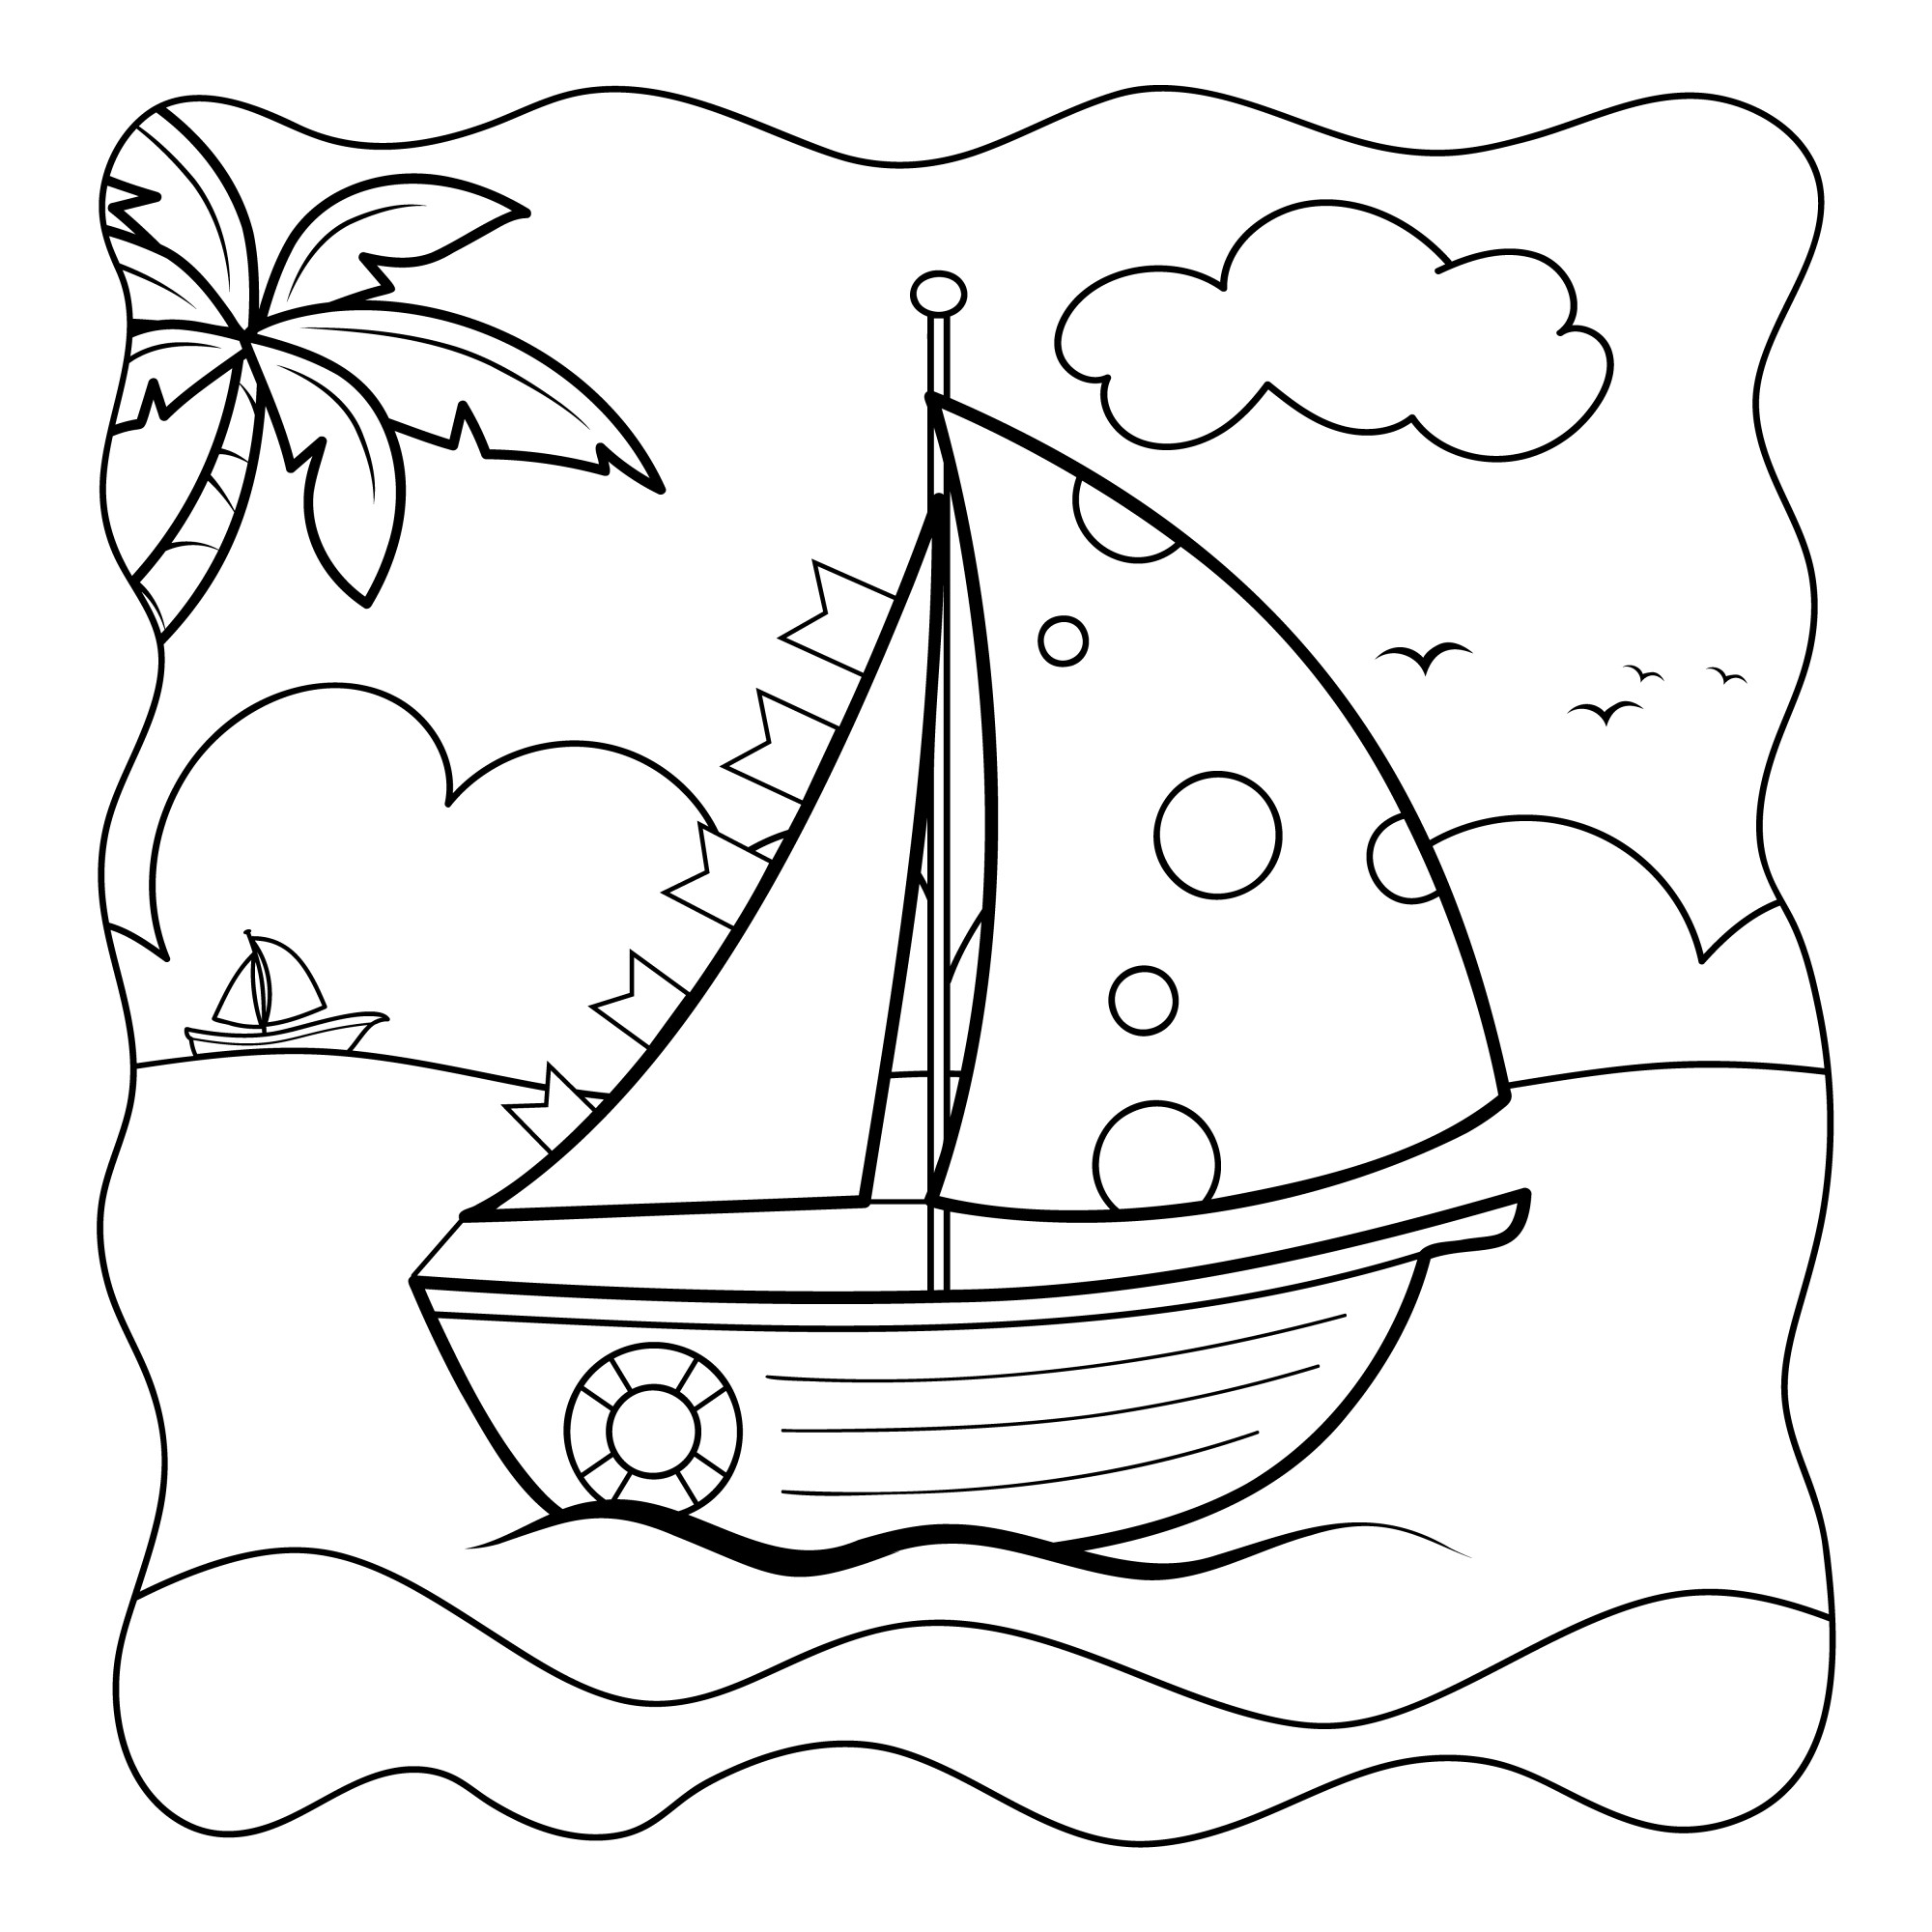 Раскраска для детей: корабль в море на фоне неба и пальм